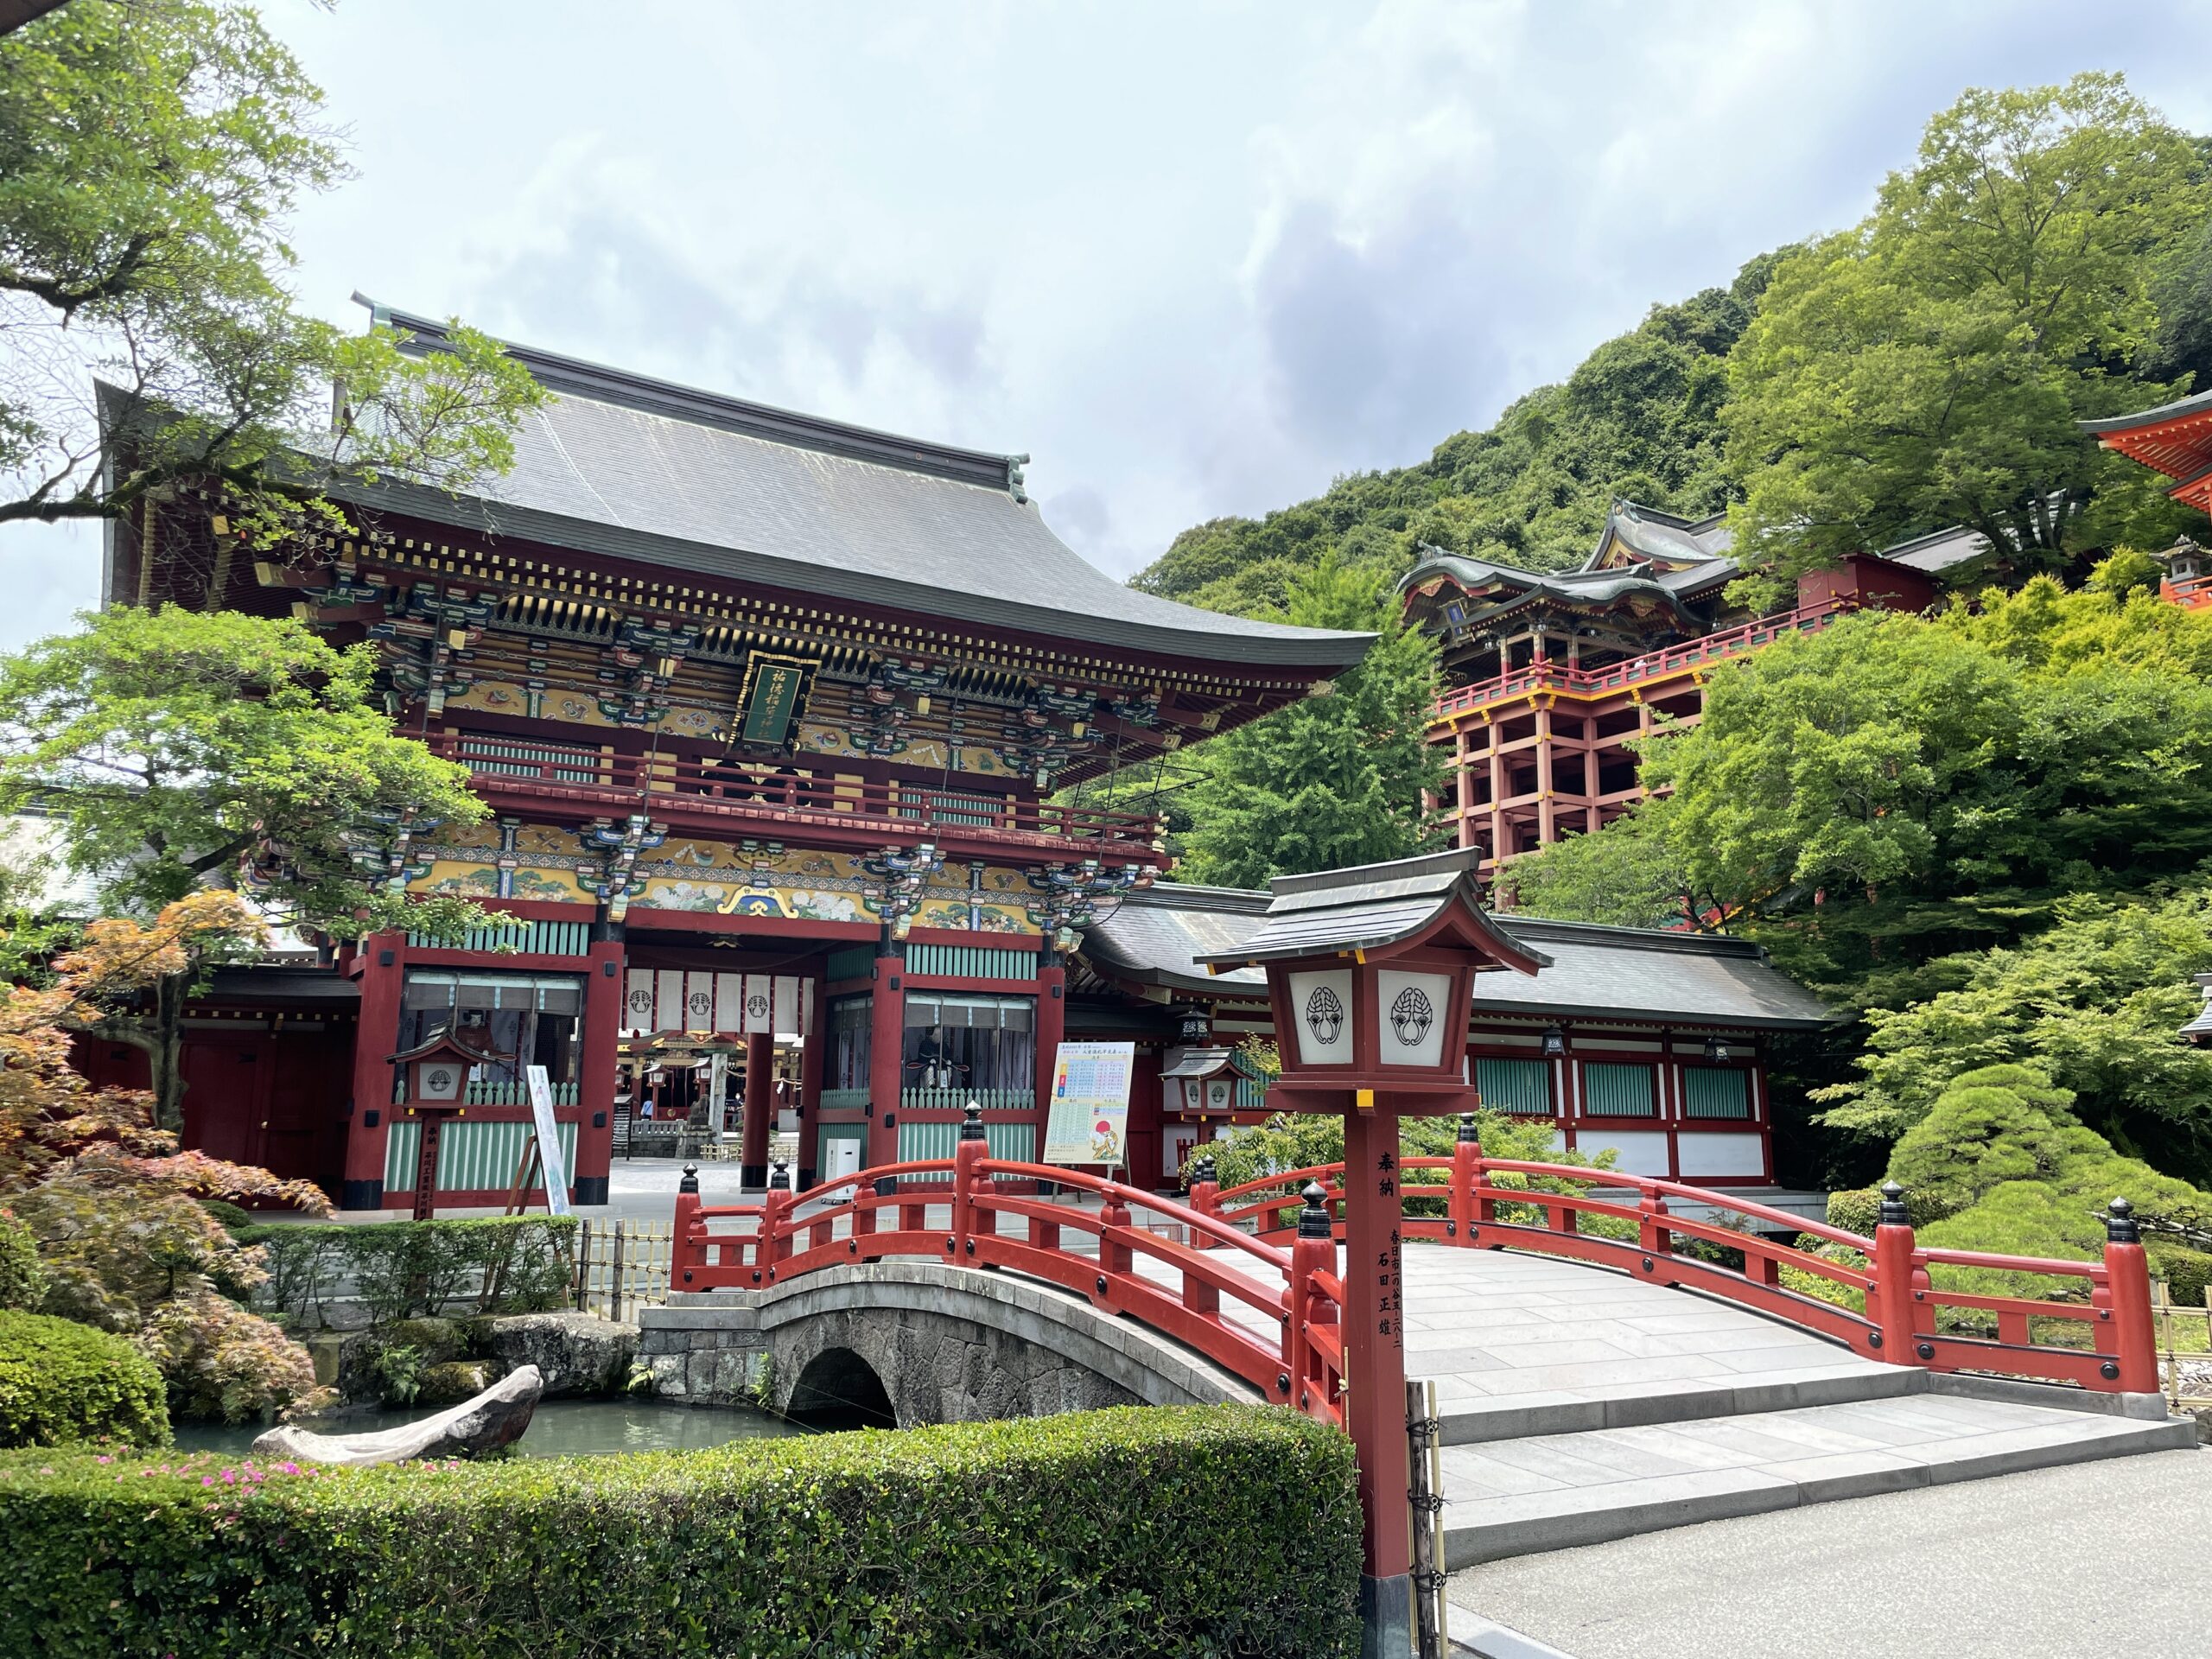 Farbenfroh und mit einer Struktur, die an den Shimizu-Schrein in Kyoto erinnert: Der Yotoku-Inari-Schrein in Kashima, Saga